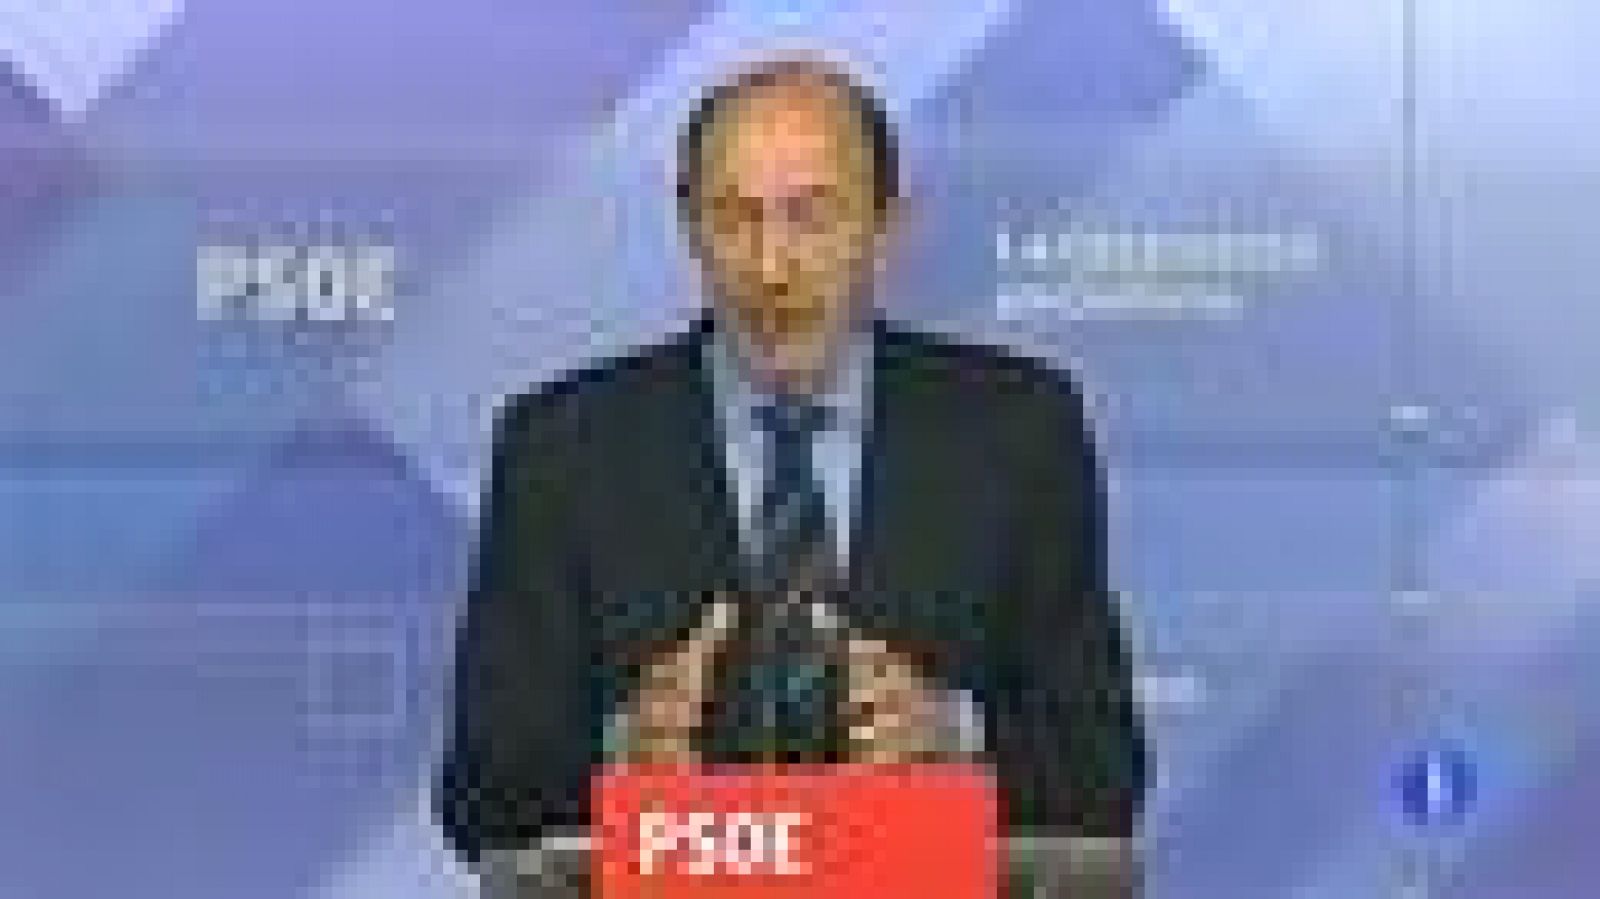  El PSOE ha pedido la comparecencia en el Congreso del ministro de Hacienda y Administraciones Públicas